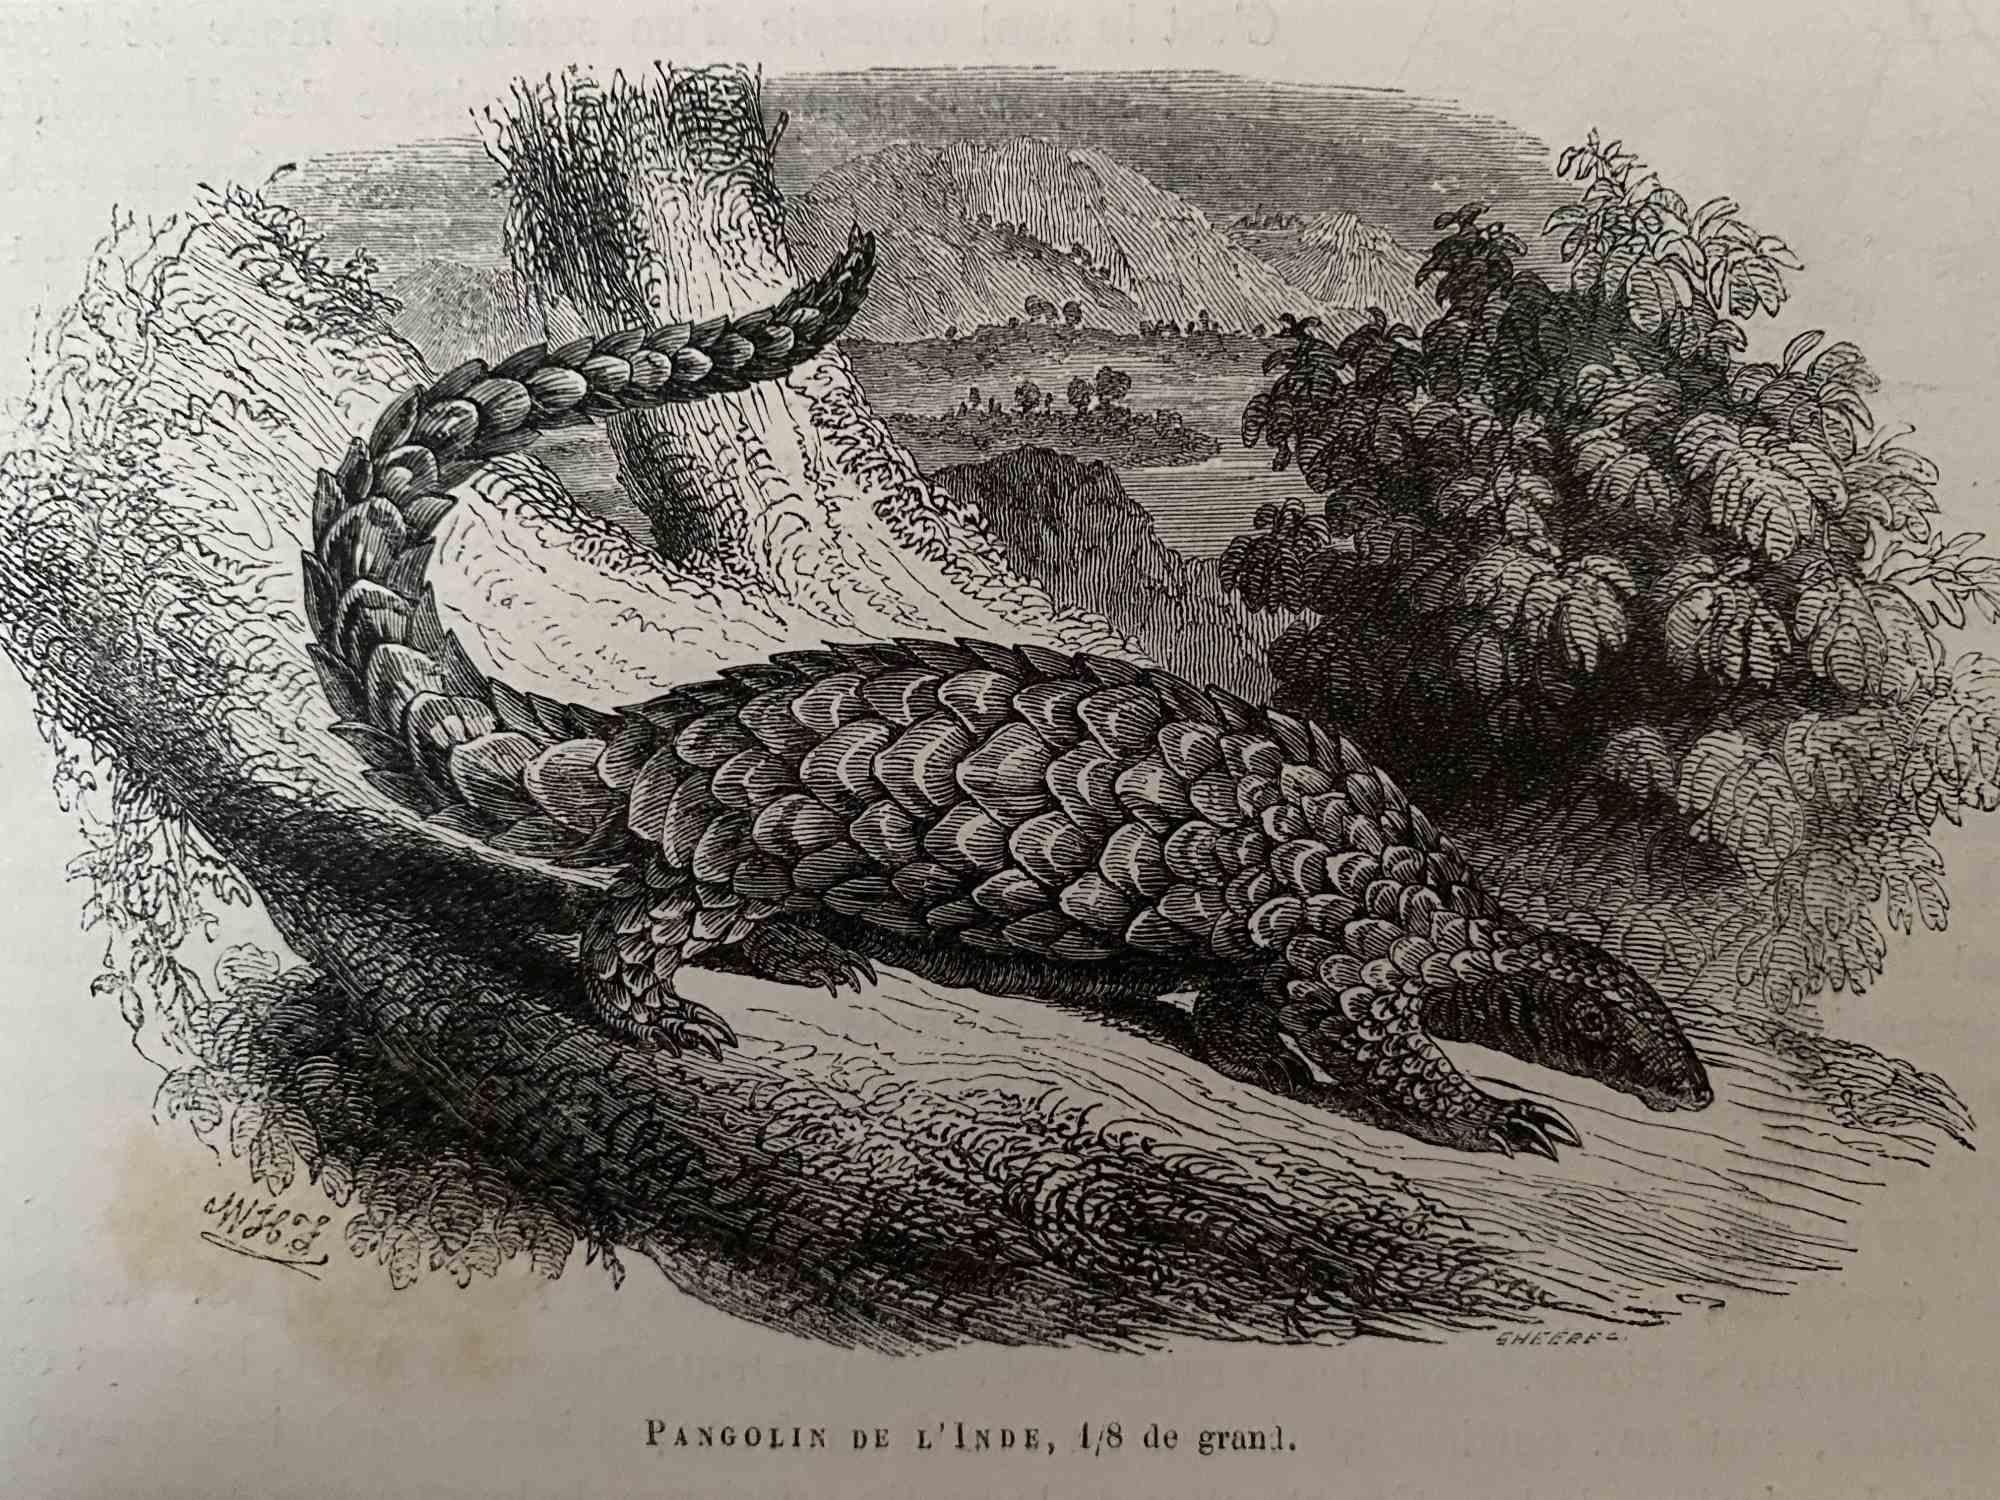 Pangolin De L'Inde - Original Lithograph by Paul Gervais - 1854